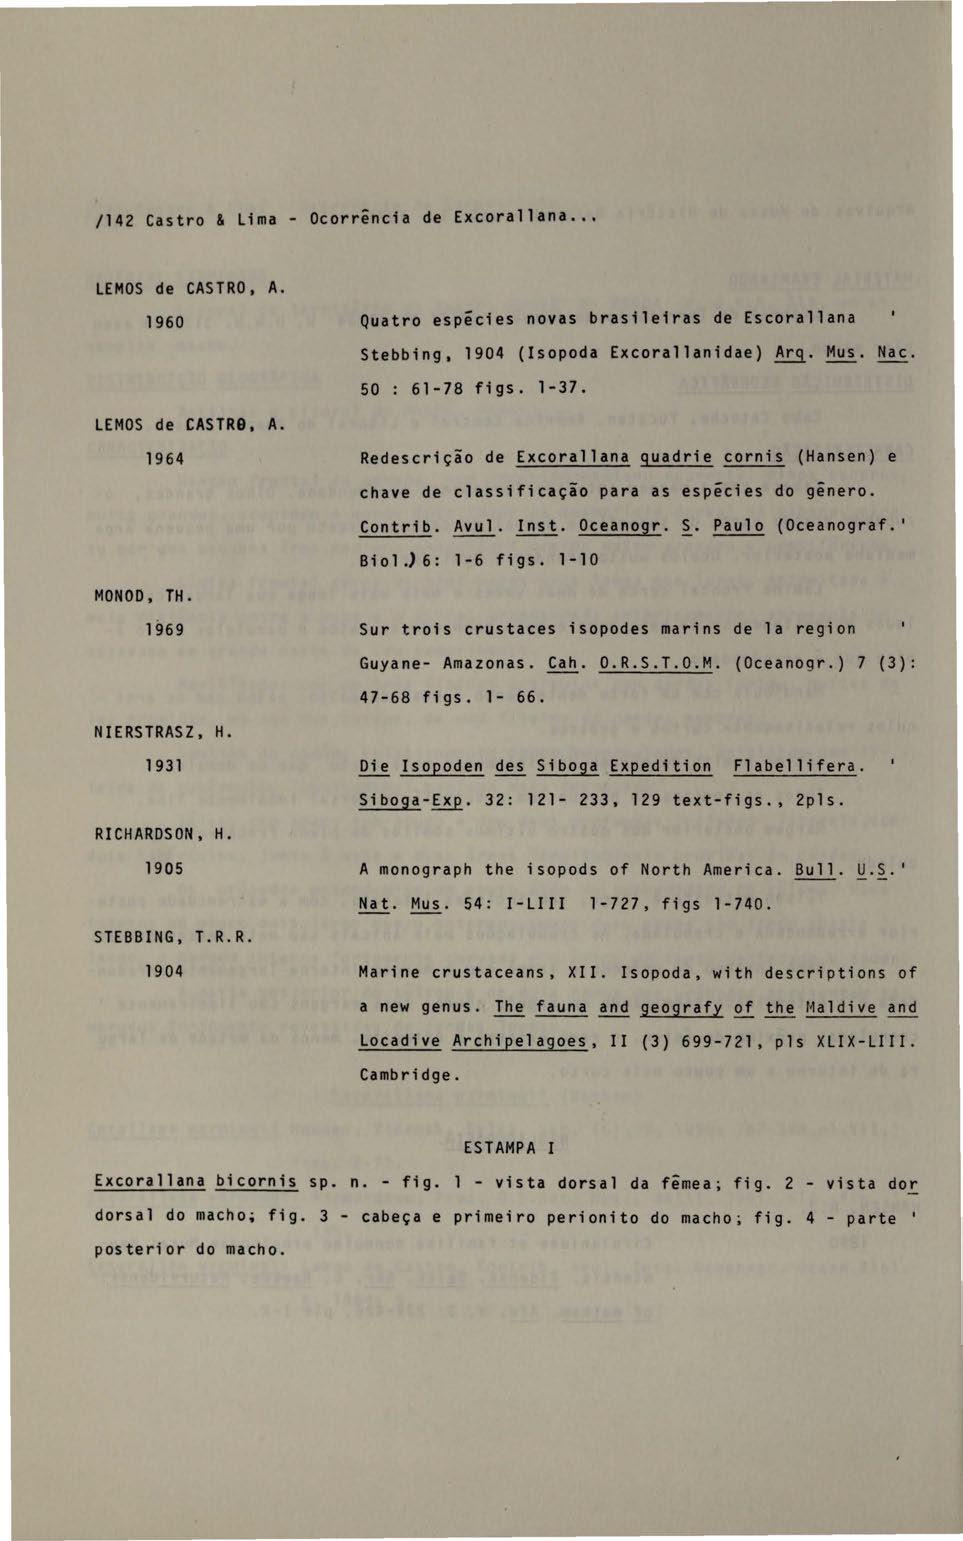 /142 Castro & Lima- Ocorrência de Excorallana... LEMOS de CASTRO, A. 1960 LEMOS de CASTR9, A. 1964 MONOD, TH. 1969 NIERSTRASZ, H. 1931 RI